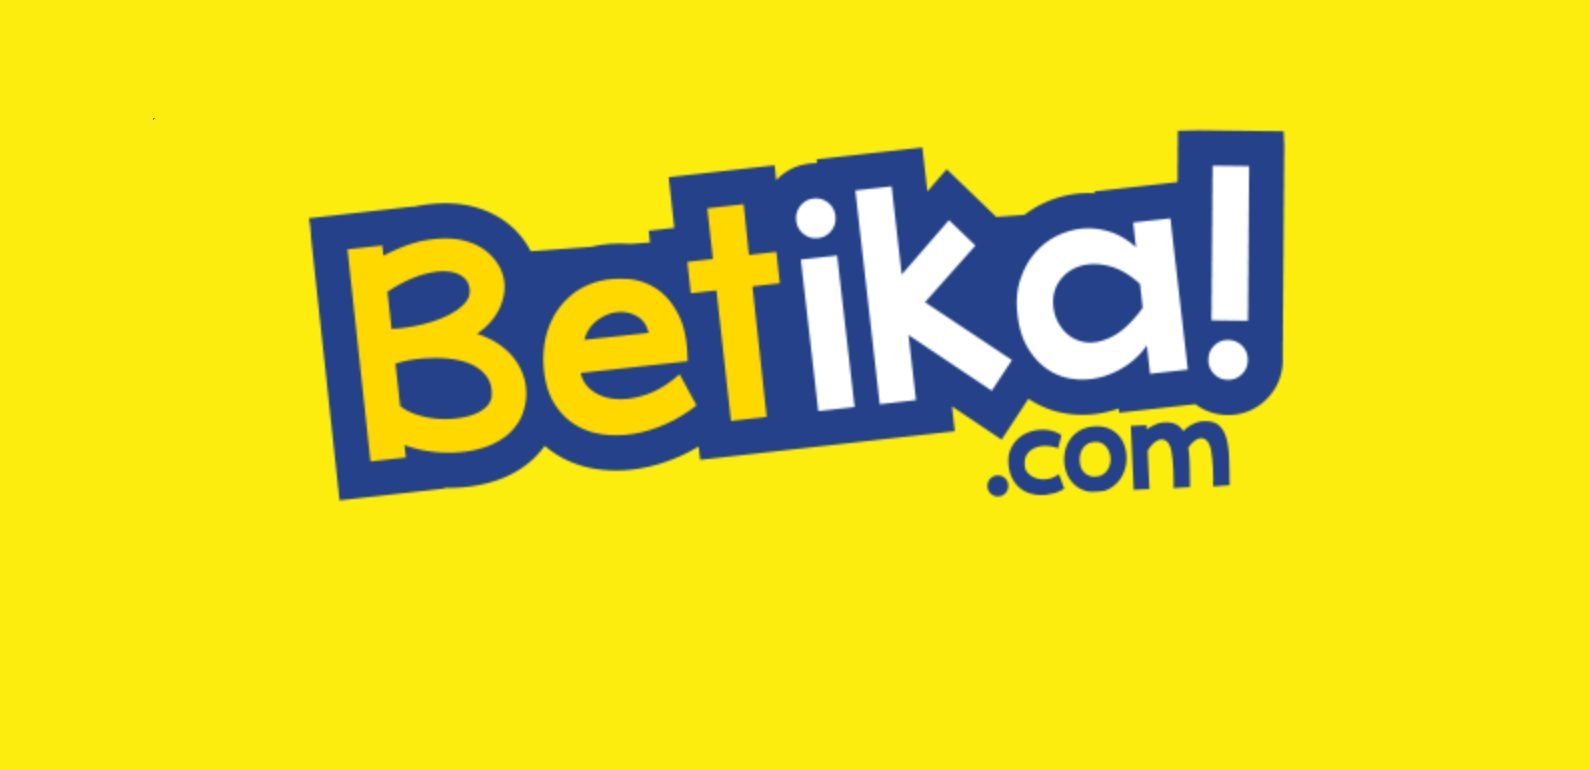 Quels codes Promo Betika en Cameroun peut-on trouver sur le net ?